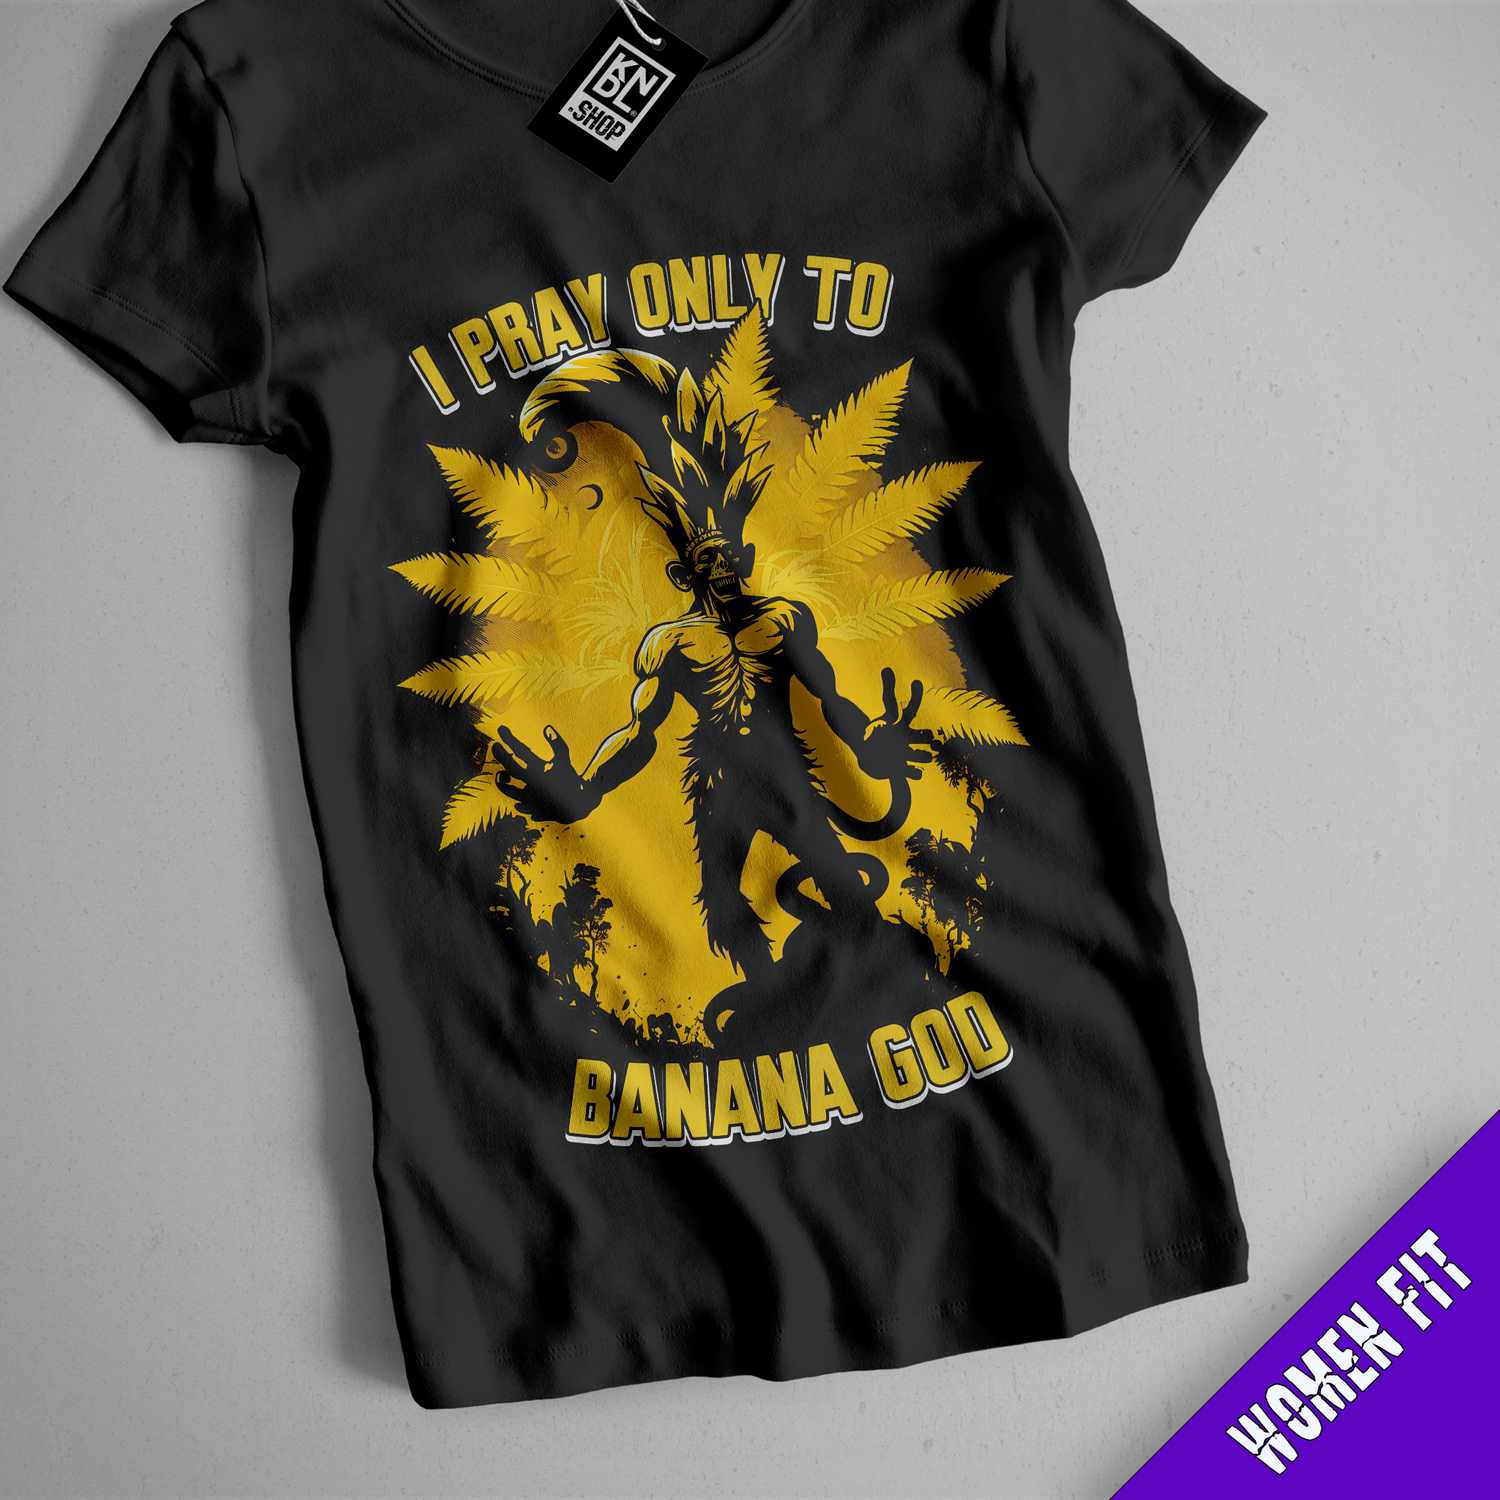 i pray only to banana god t - shirt design